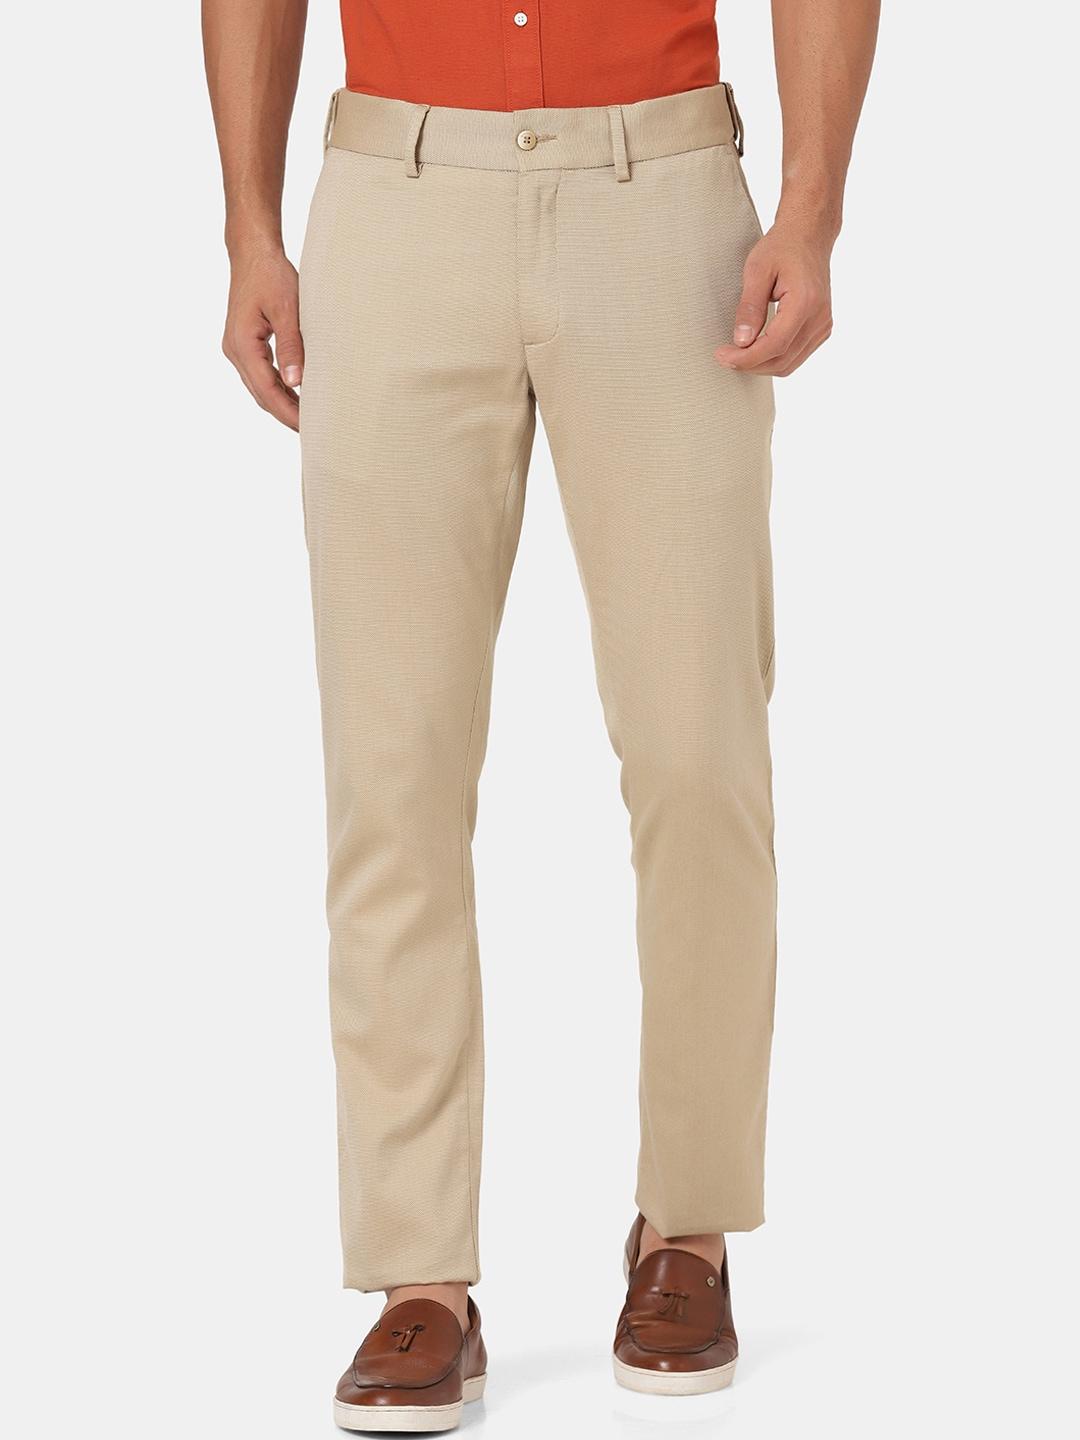 blackberrys-men-beige-slim-fit-low-rise-cotton-trousers